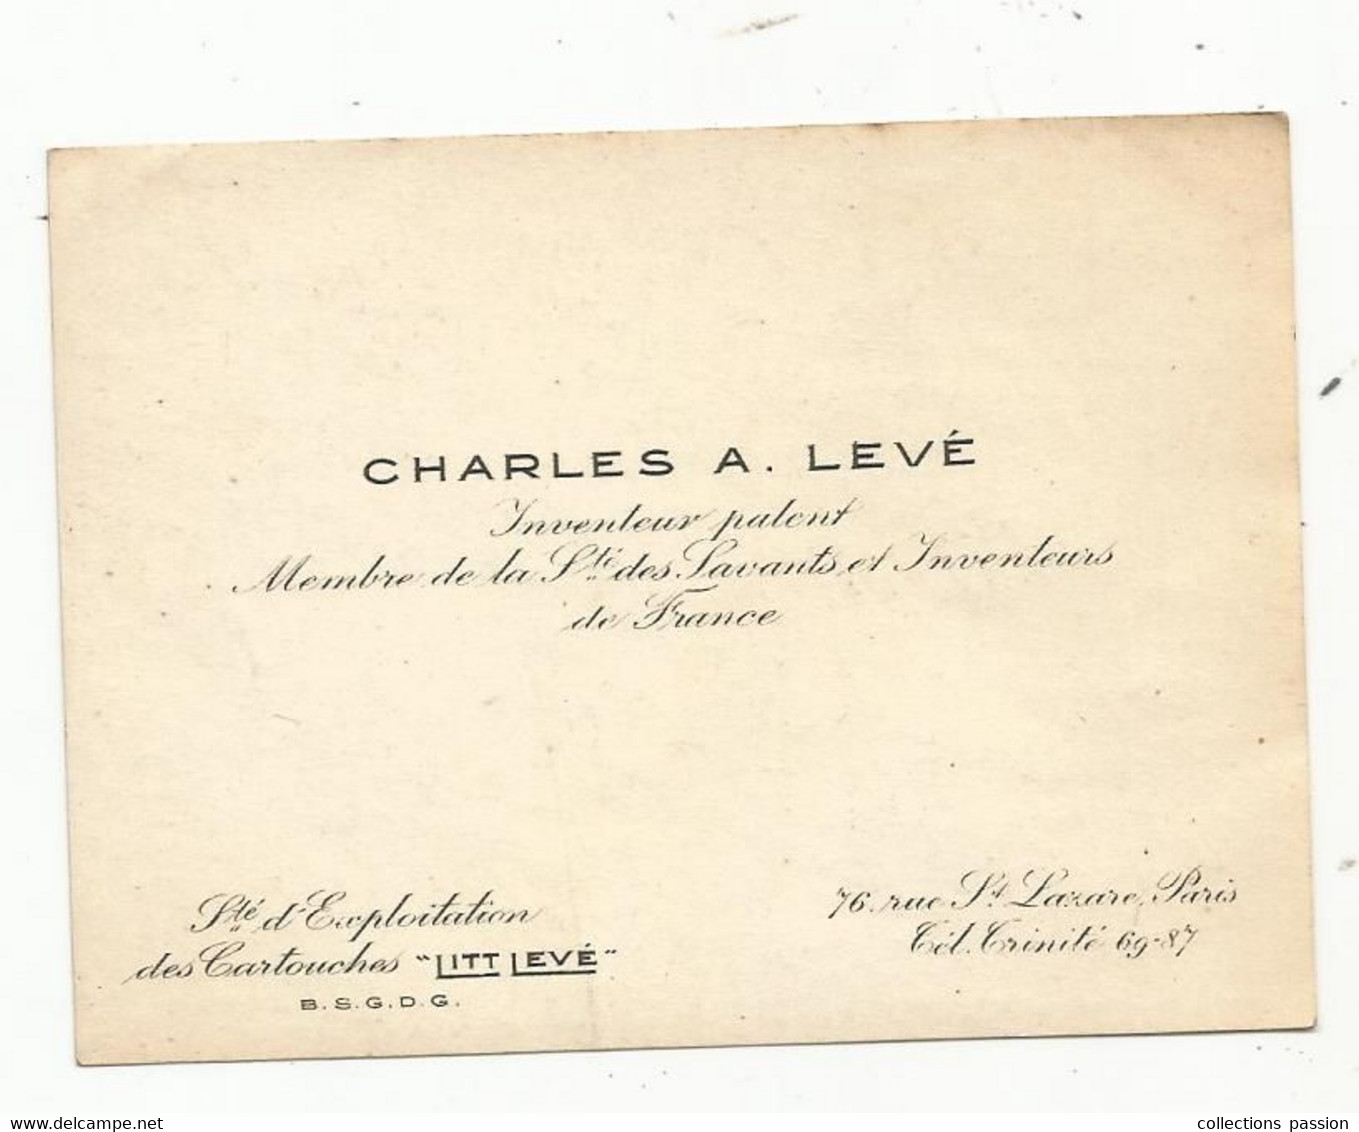 Carte De Visite ,Charles A. Levé , Inventeur Palent ,membre De La Sté Des Savants Et Inventeurs De France, Paris - Cartes De Visite